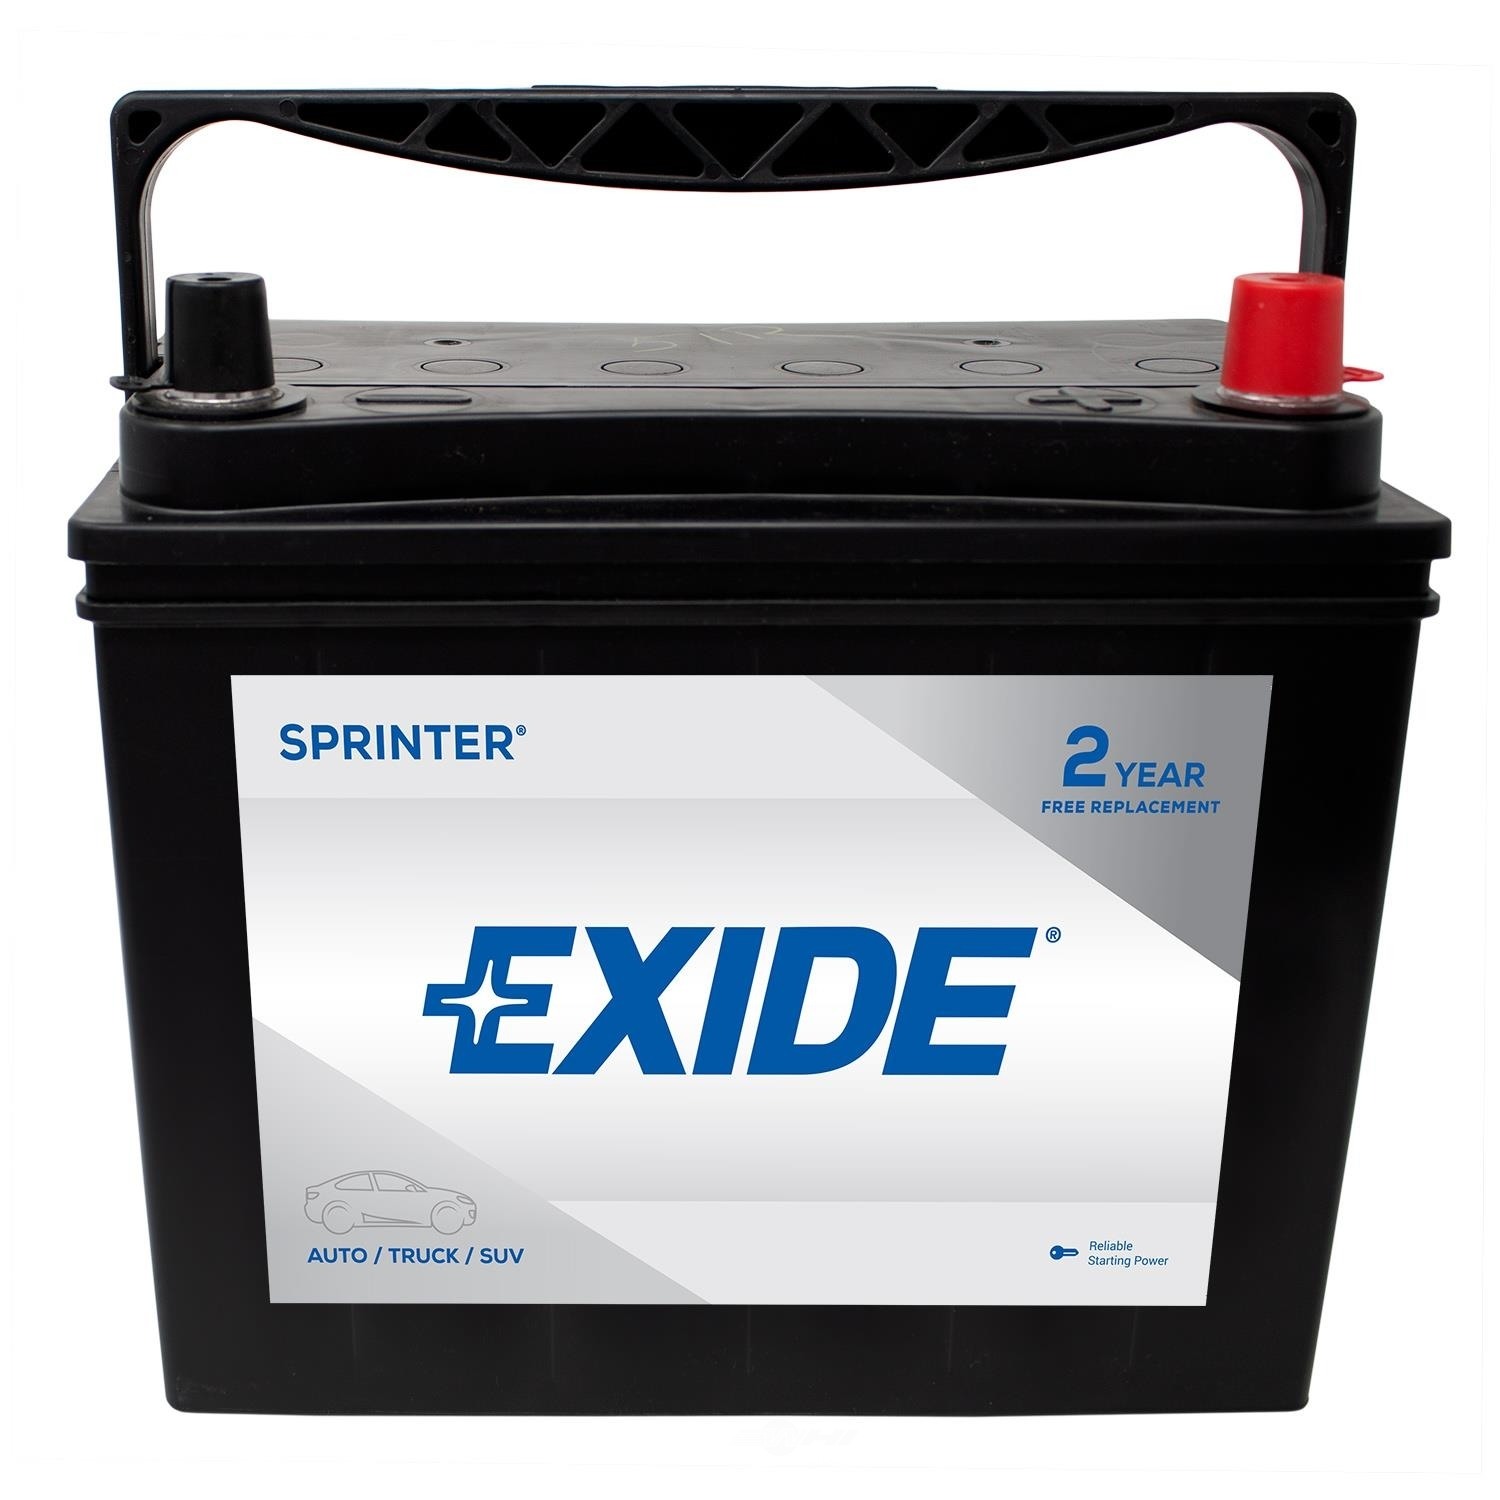 EXIDE BATTERIES - SPRINTER - CCA: 450 - EX1 S51